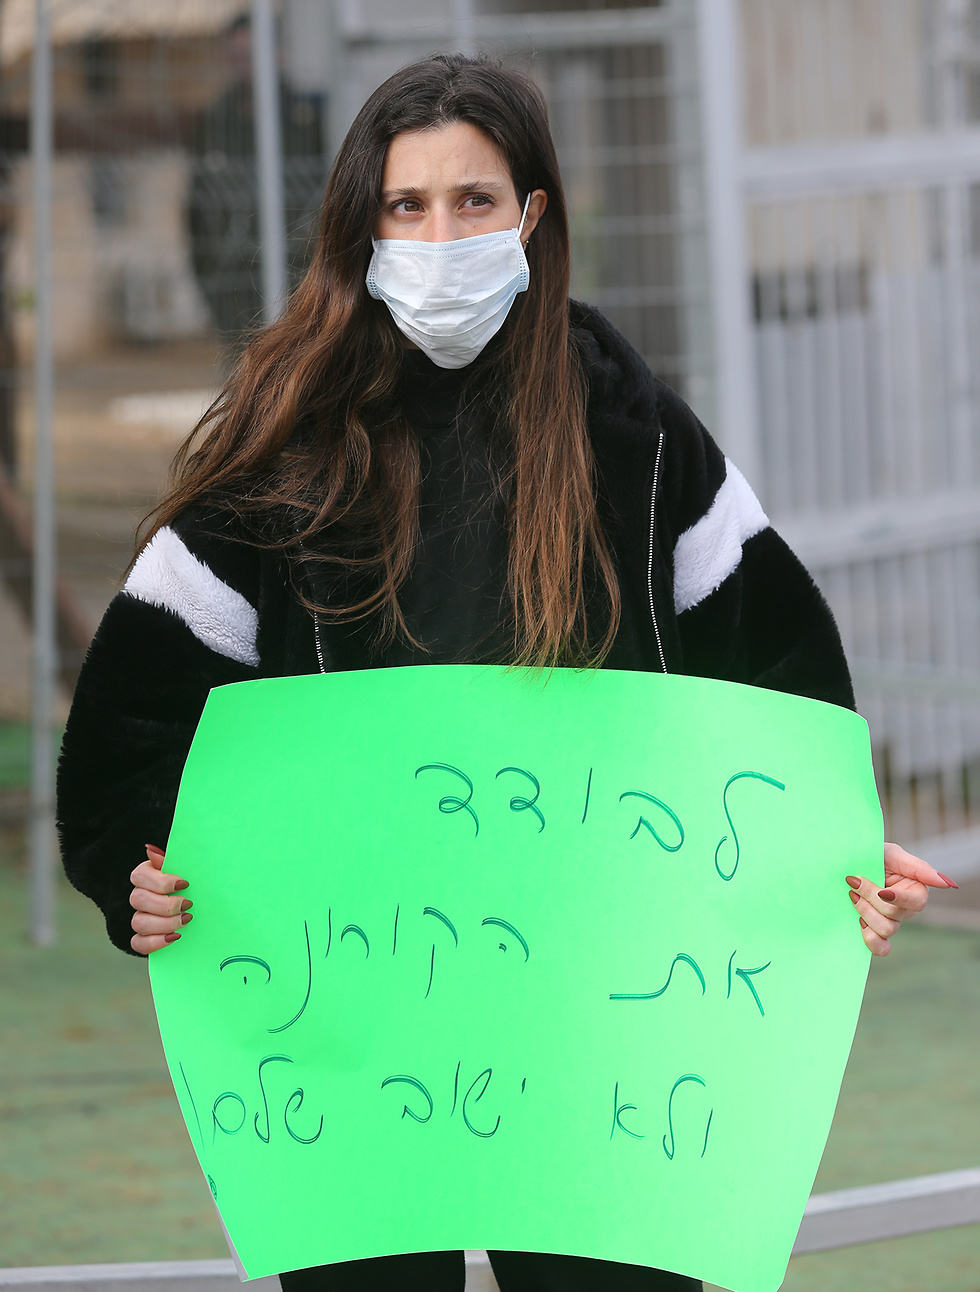 הפגנה מדרשה צבאית בגילה בירושלים הופכת להיות מקום בידוד מפני נגיף הקורונה (צילום: אלכס קולומויסקי)